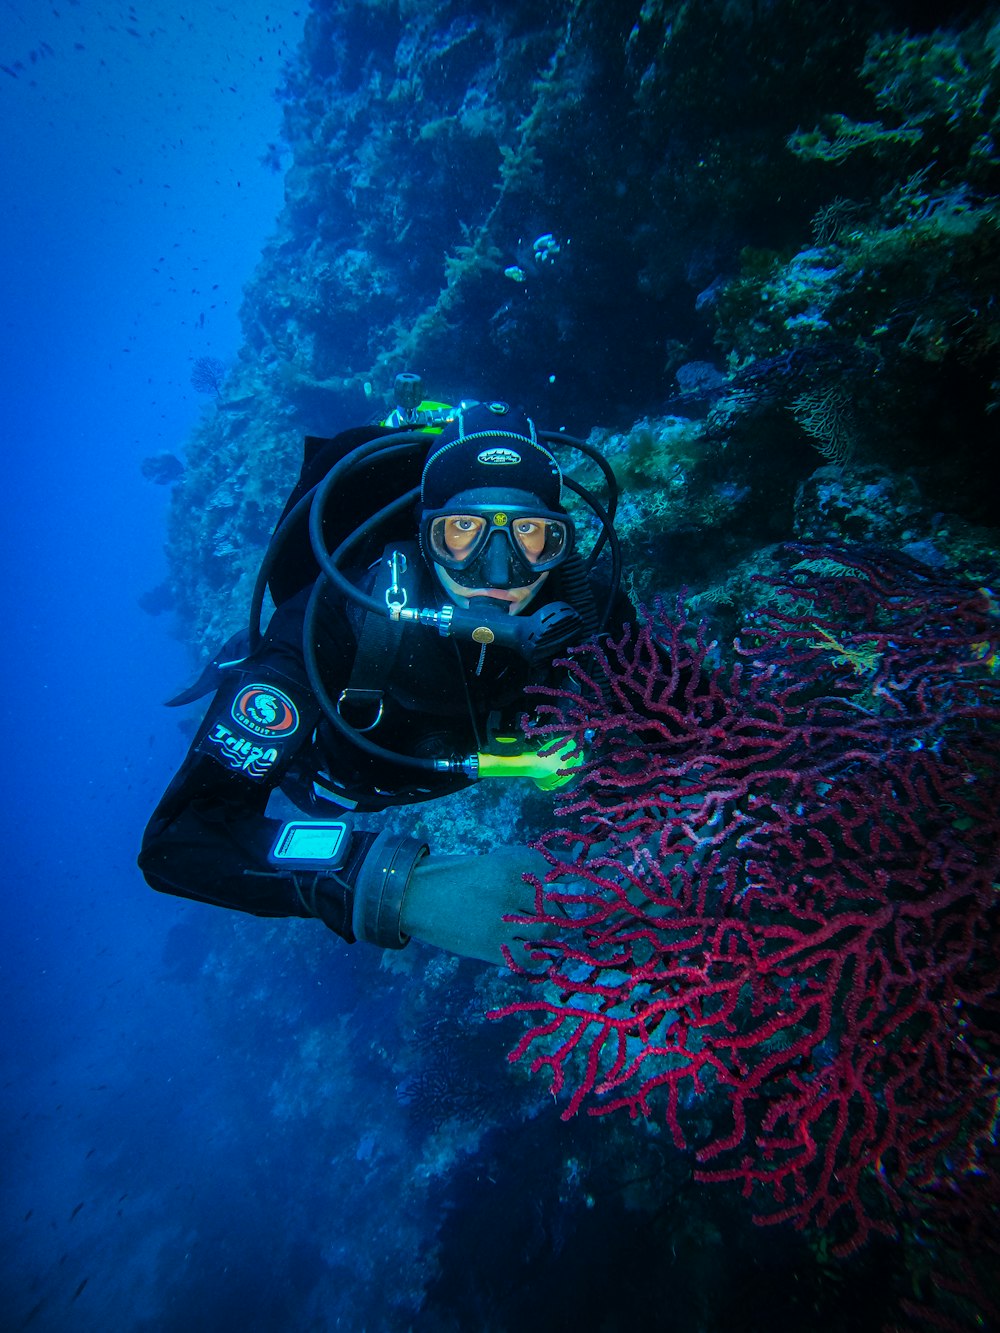 a person scubas near a coral reef in the ocean